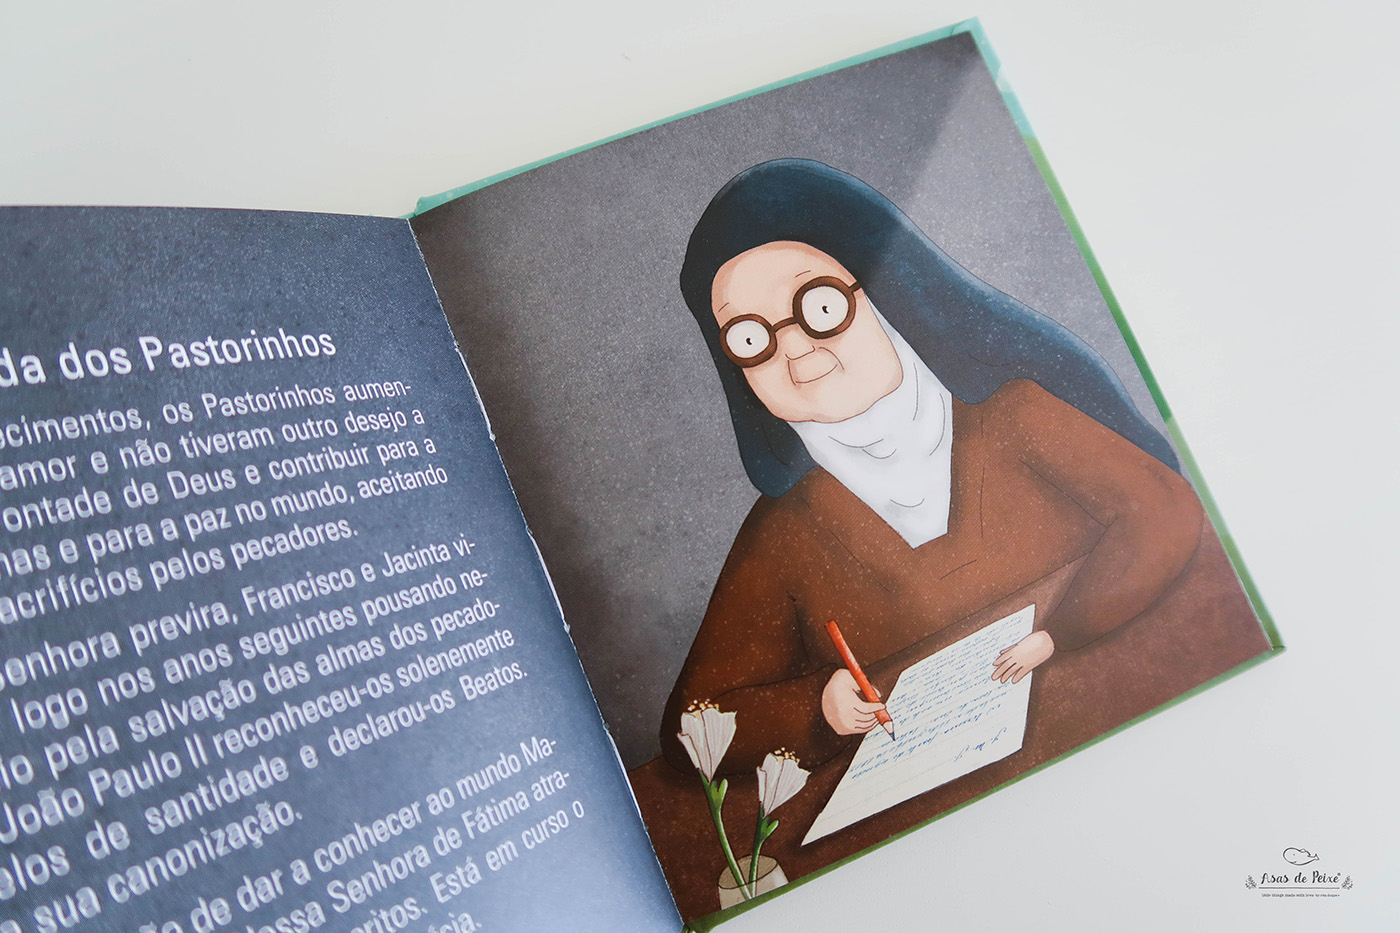 fatima Portugal apparitions Aparições nossa senhora religião religious children's book kids ILLUSTRATION 